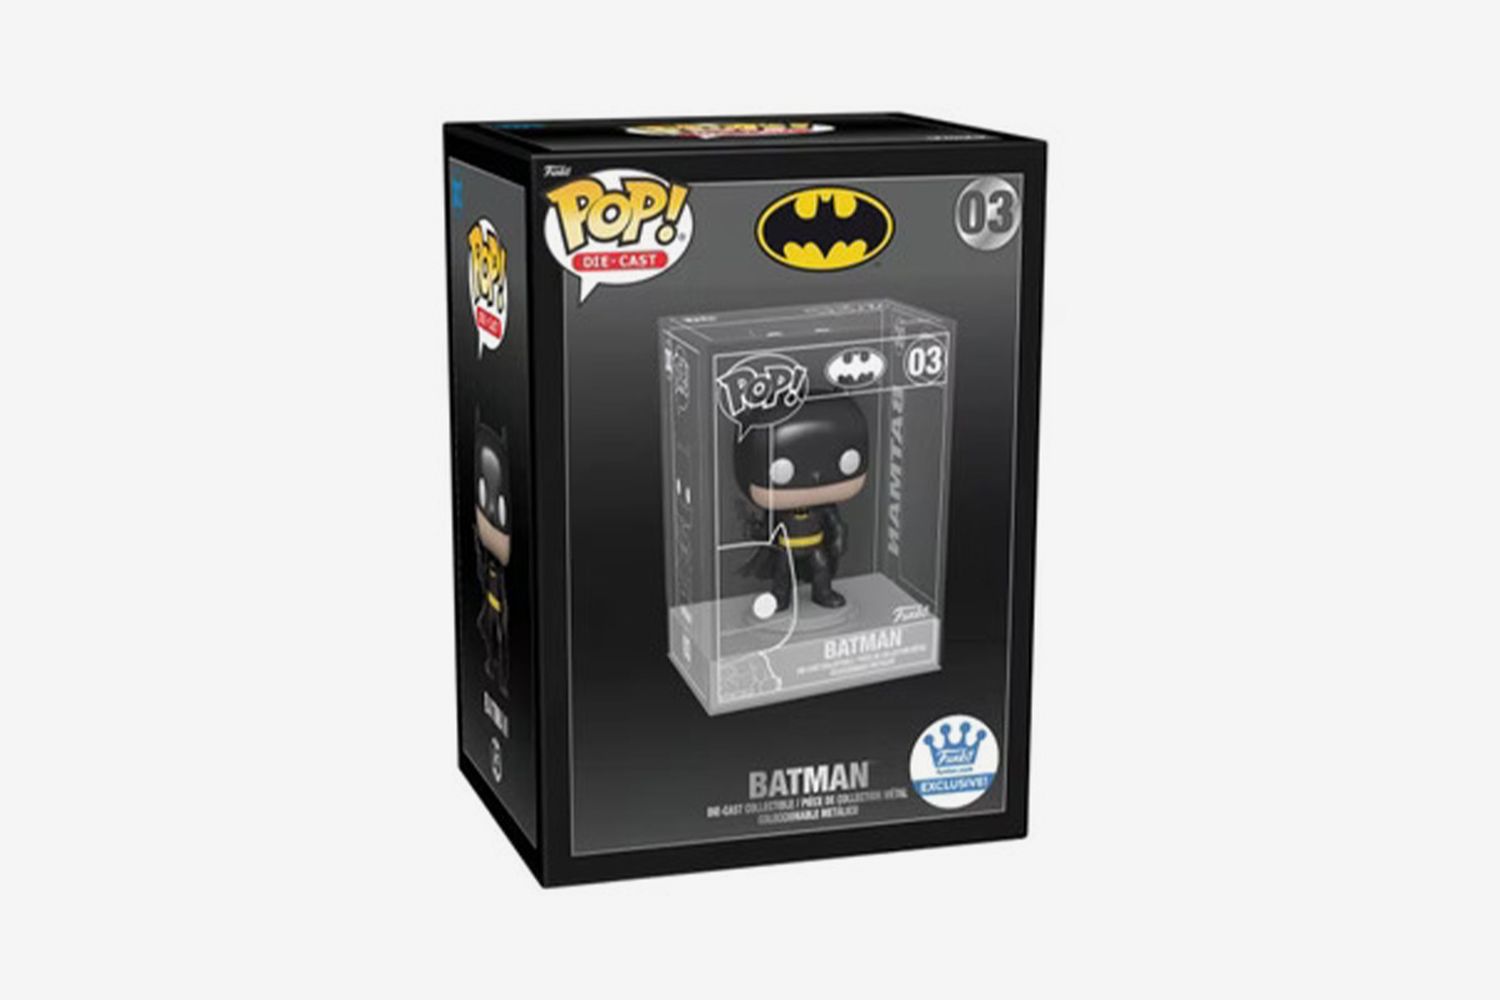 Pop! Die-Cast Batman Funko Shop Exclusive Figure #03